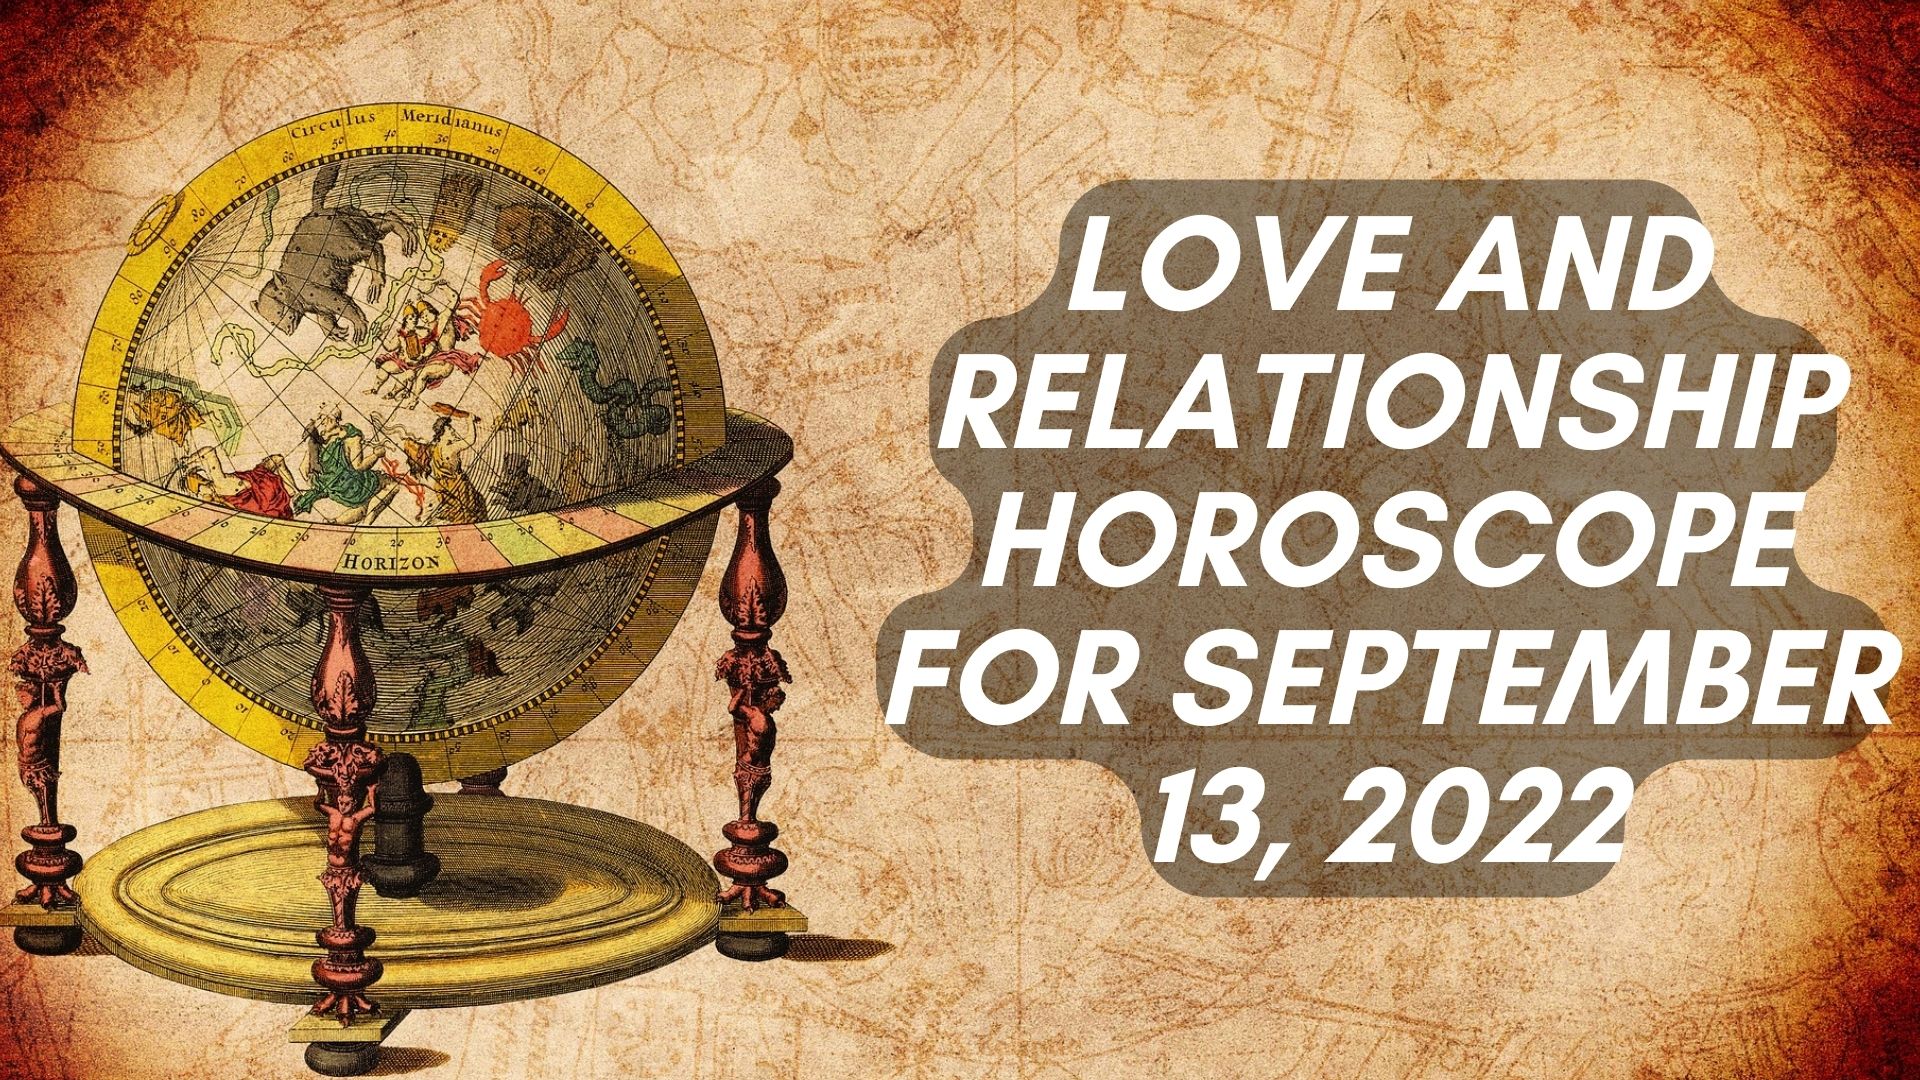 Love And Relationship Horoscope For September 13, 2022